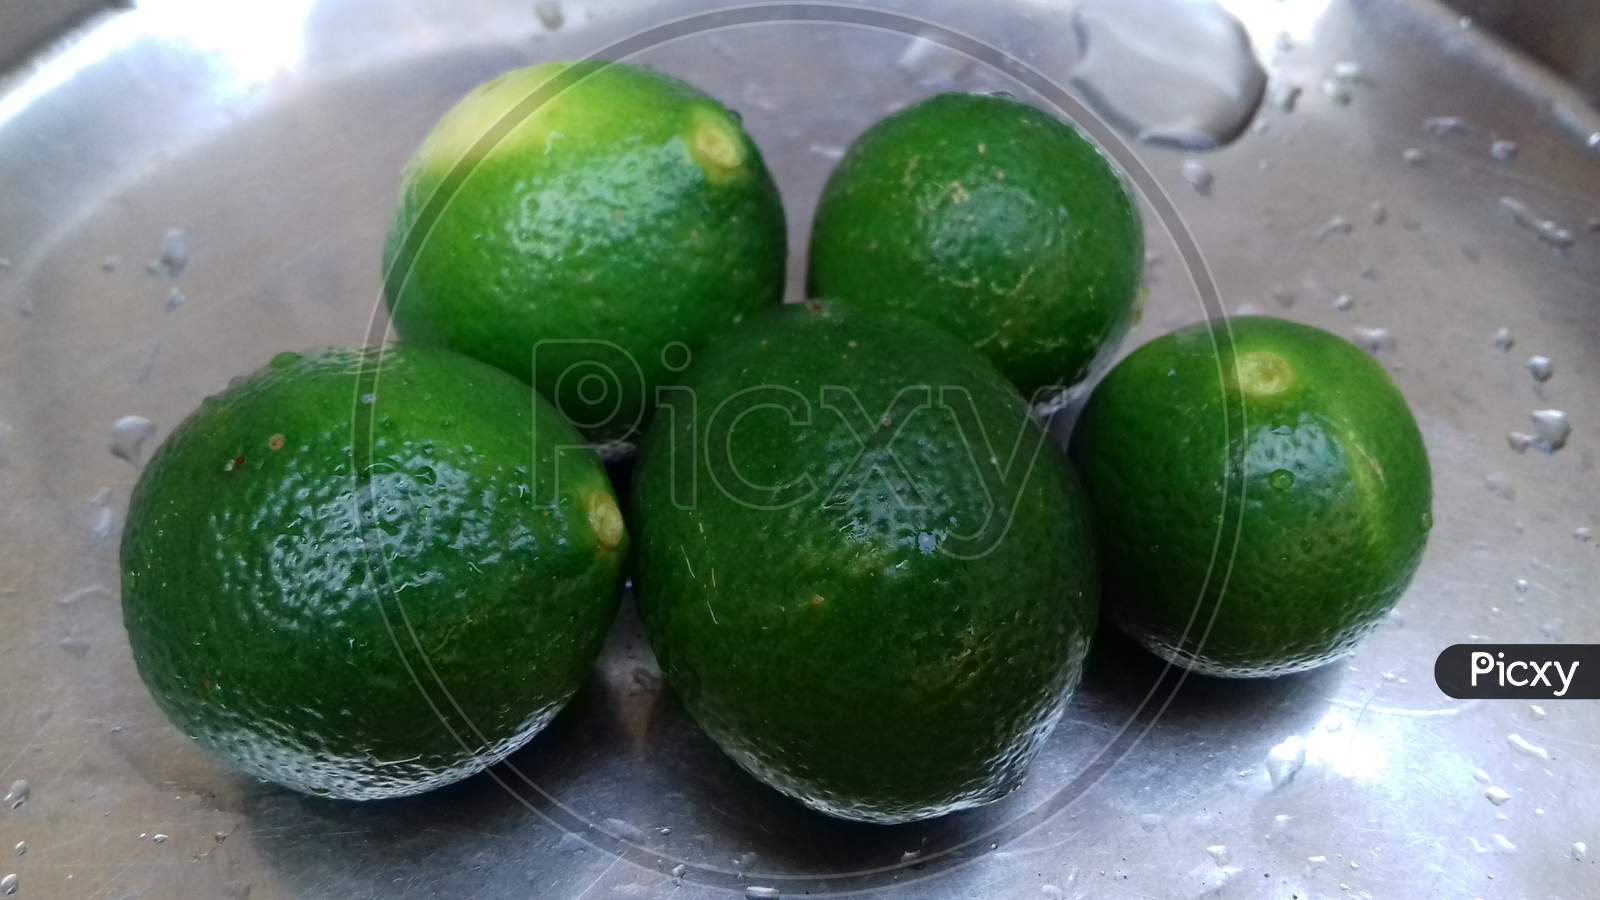 Green fresh lemons